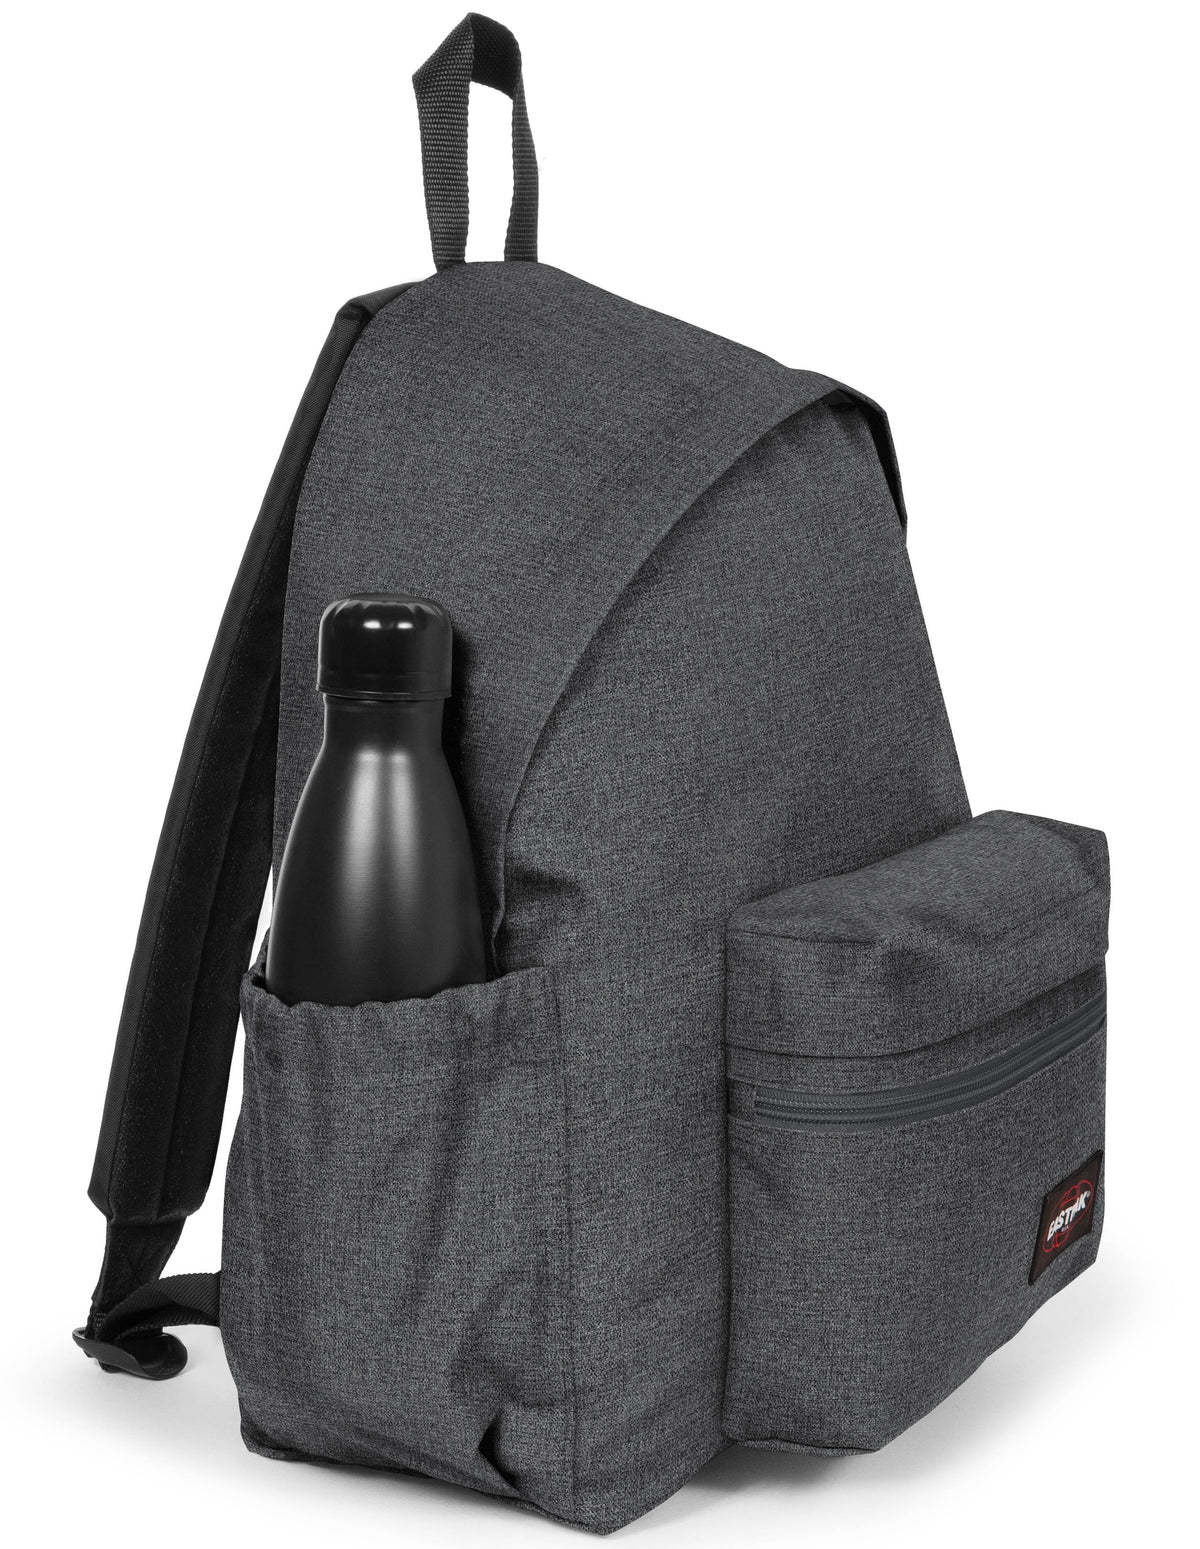 Eastpak Padded Zippl'r + Backpack - Black Denim